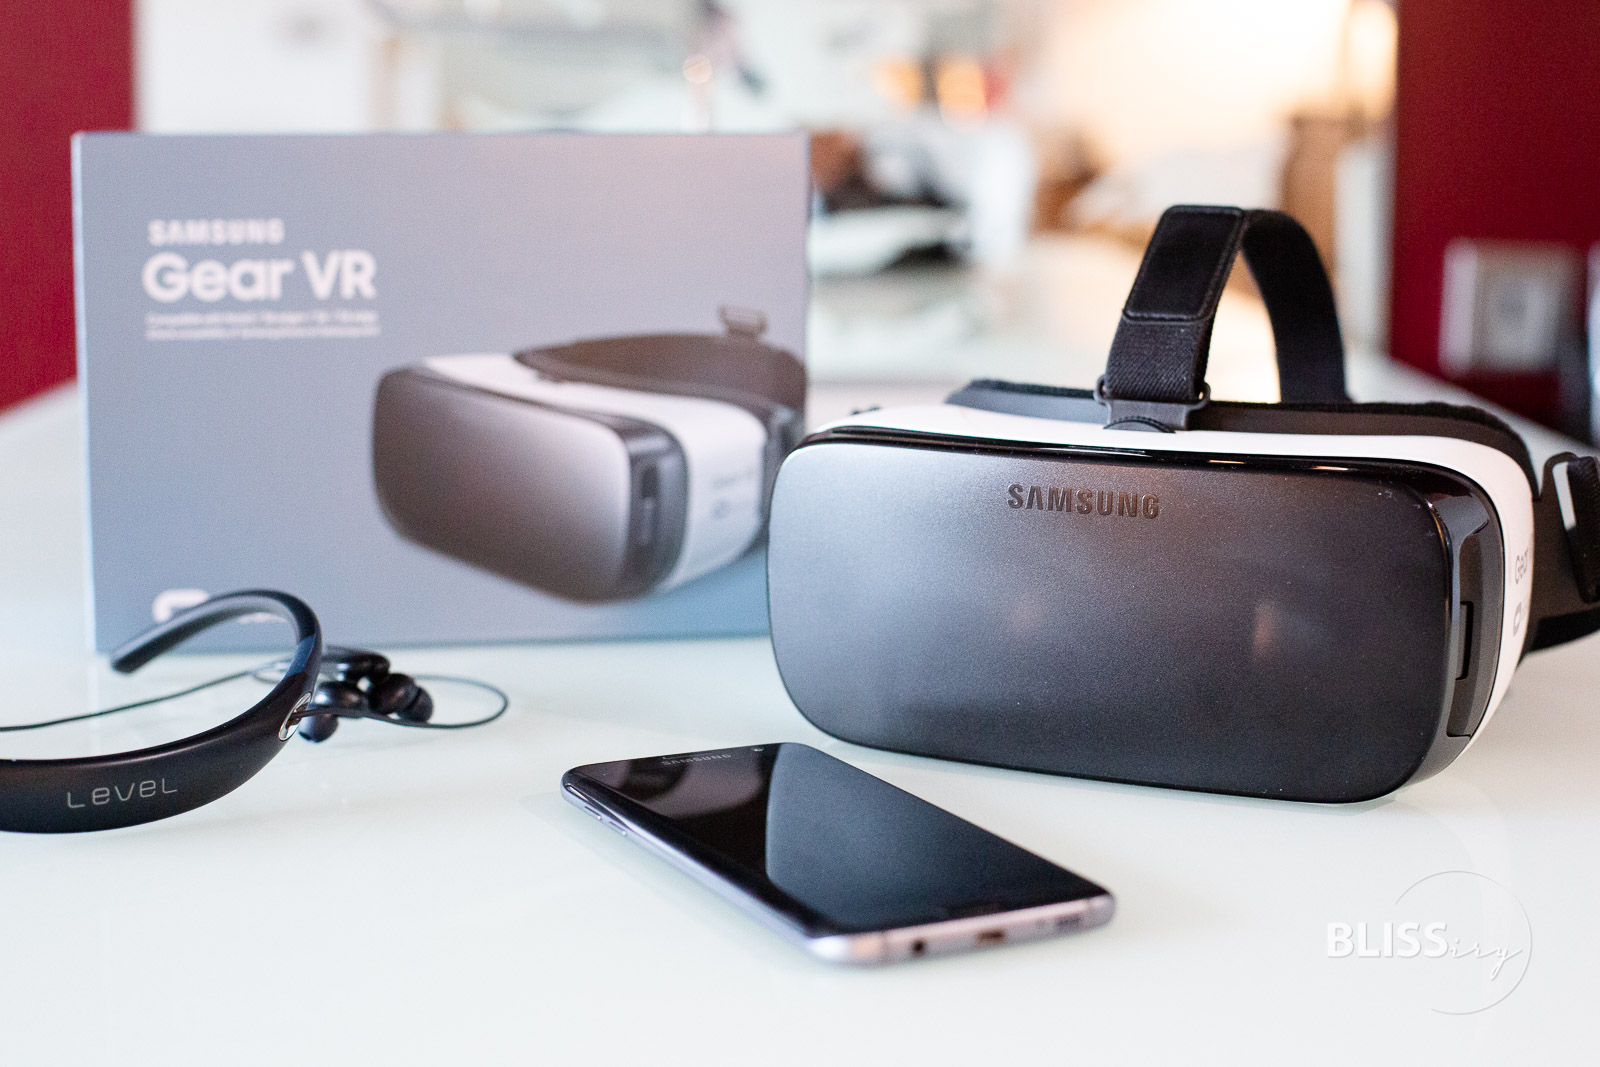 SAMSUNG GEAR VR Brille - Samsung Galaxy S7edge und Level U Pro - Virtuale Realität - Produkttest - Technikblog - Fotoblogger - Lifestyleblogger